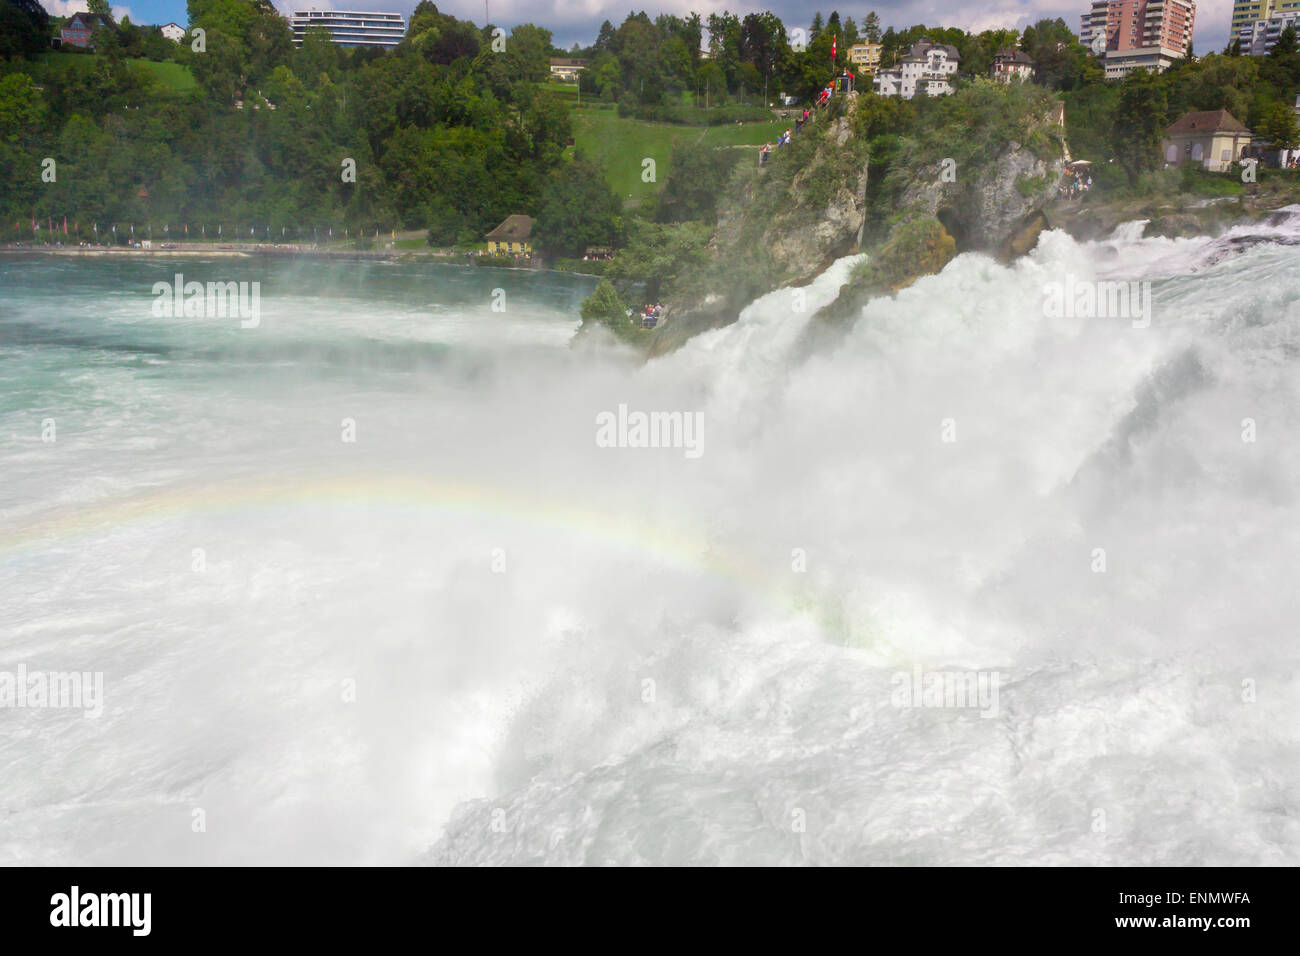 Rheinfall - der grösste Wasserfall Europas, befindet sich in Schaffhausen, Schweiz. Schwachen Regenbogen ist über den Wasserfall sehen. Stockfoto